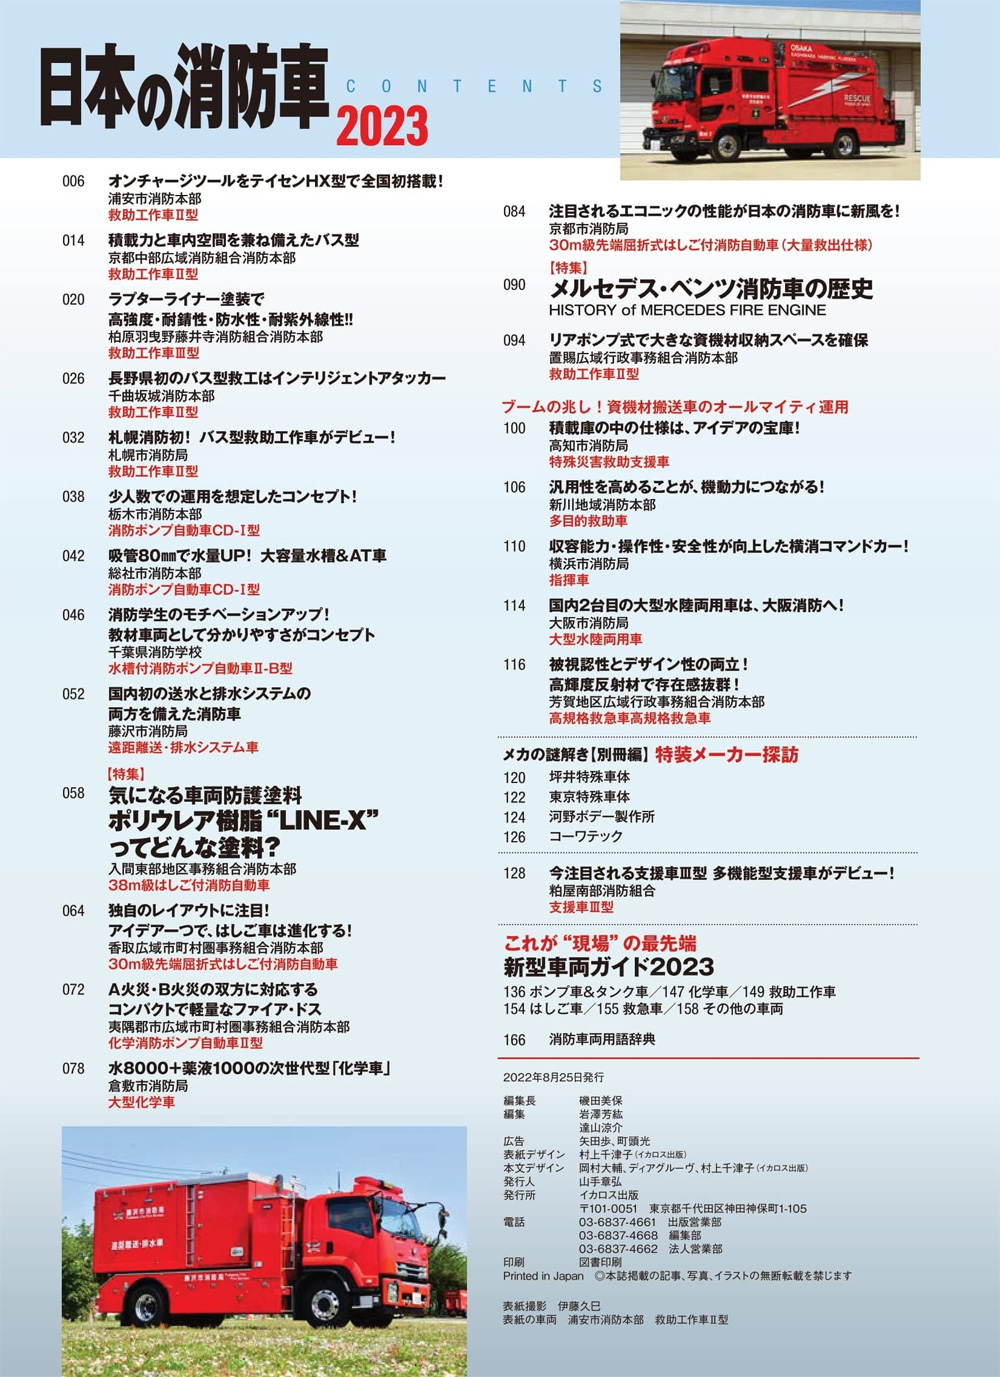 日本の消防車 2023 ムック (イカロス出版 イカロスムック No.61859-12) 商品画像_1